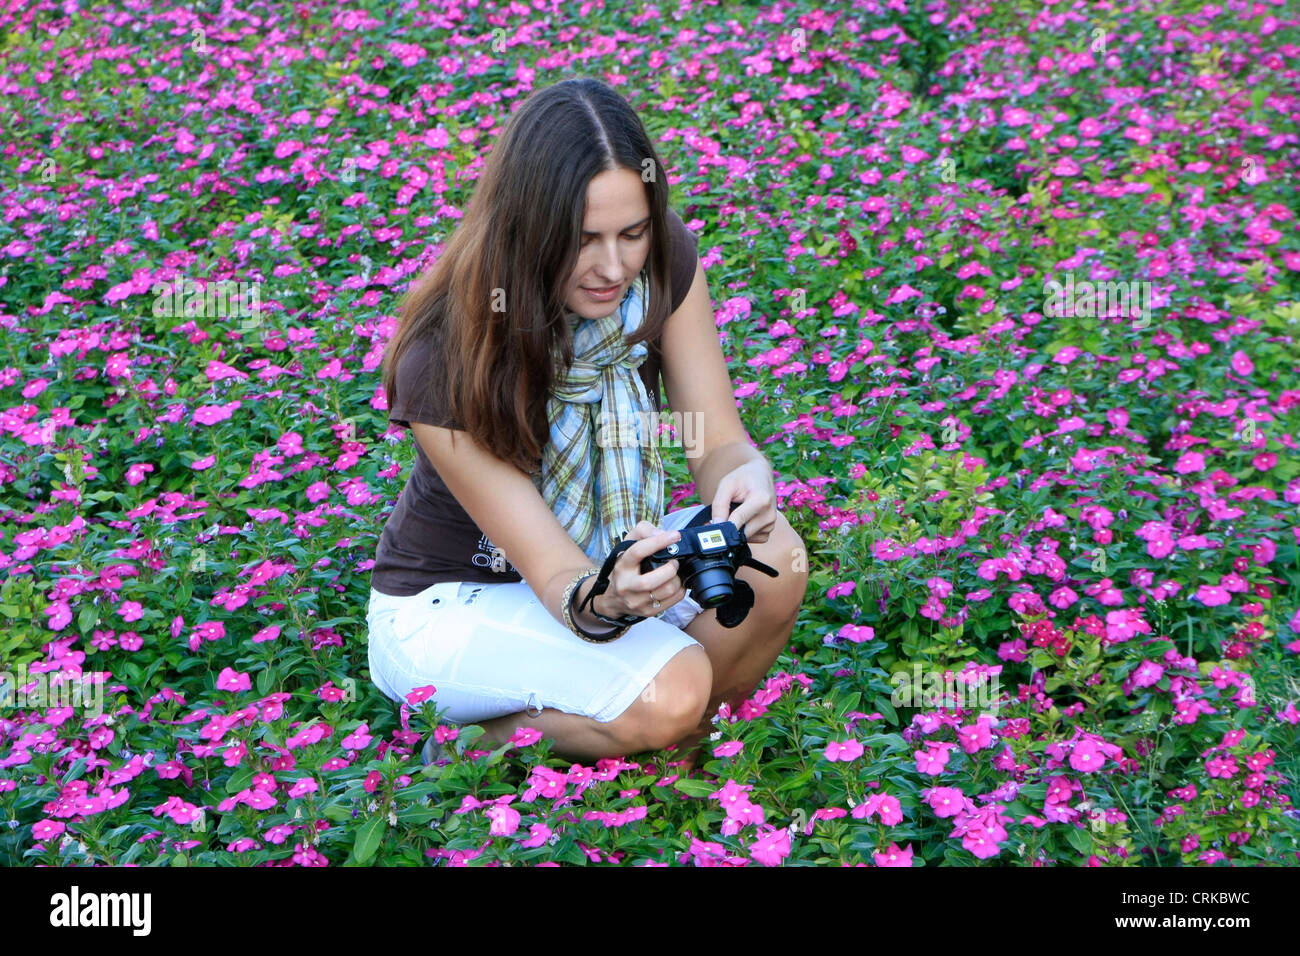 Junge Frau im Bett von Blumen Fotografieren, Belgrad, Serbien Stockfoto